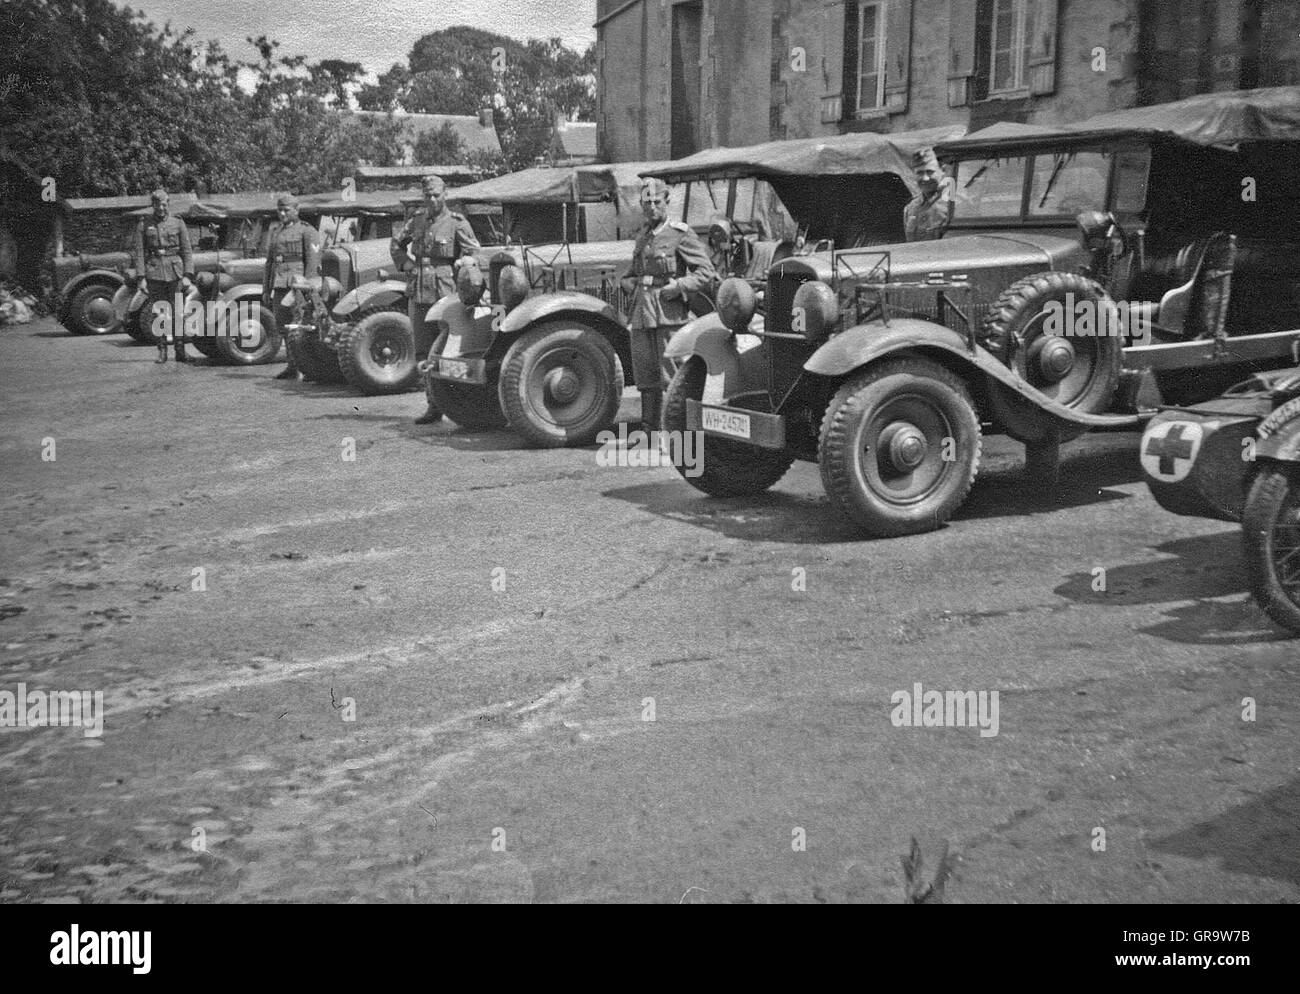 Militärische Fahrzeuge 1940 In Belgien während des zweiten Weltkriegs Stockfoto